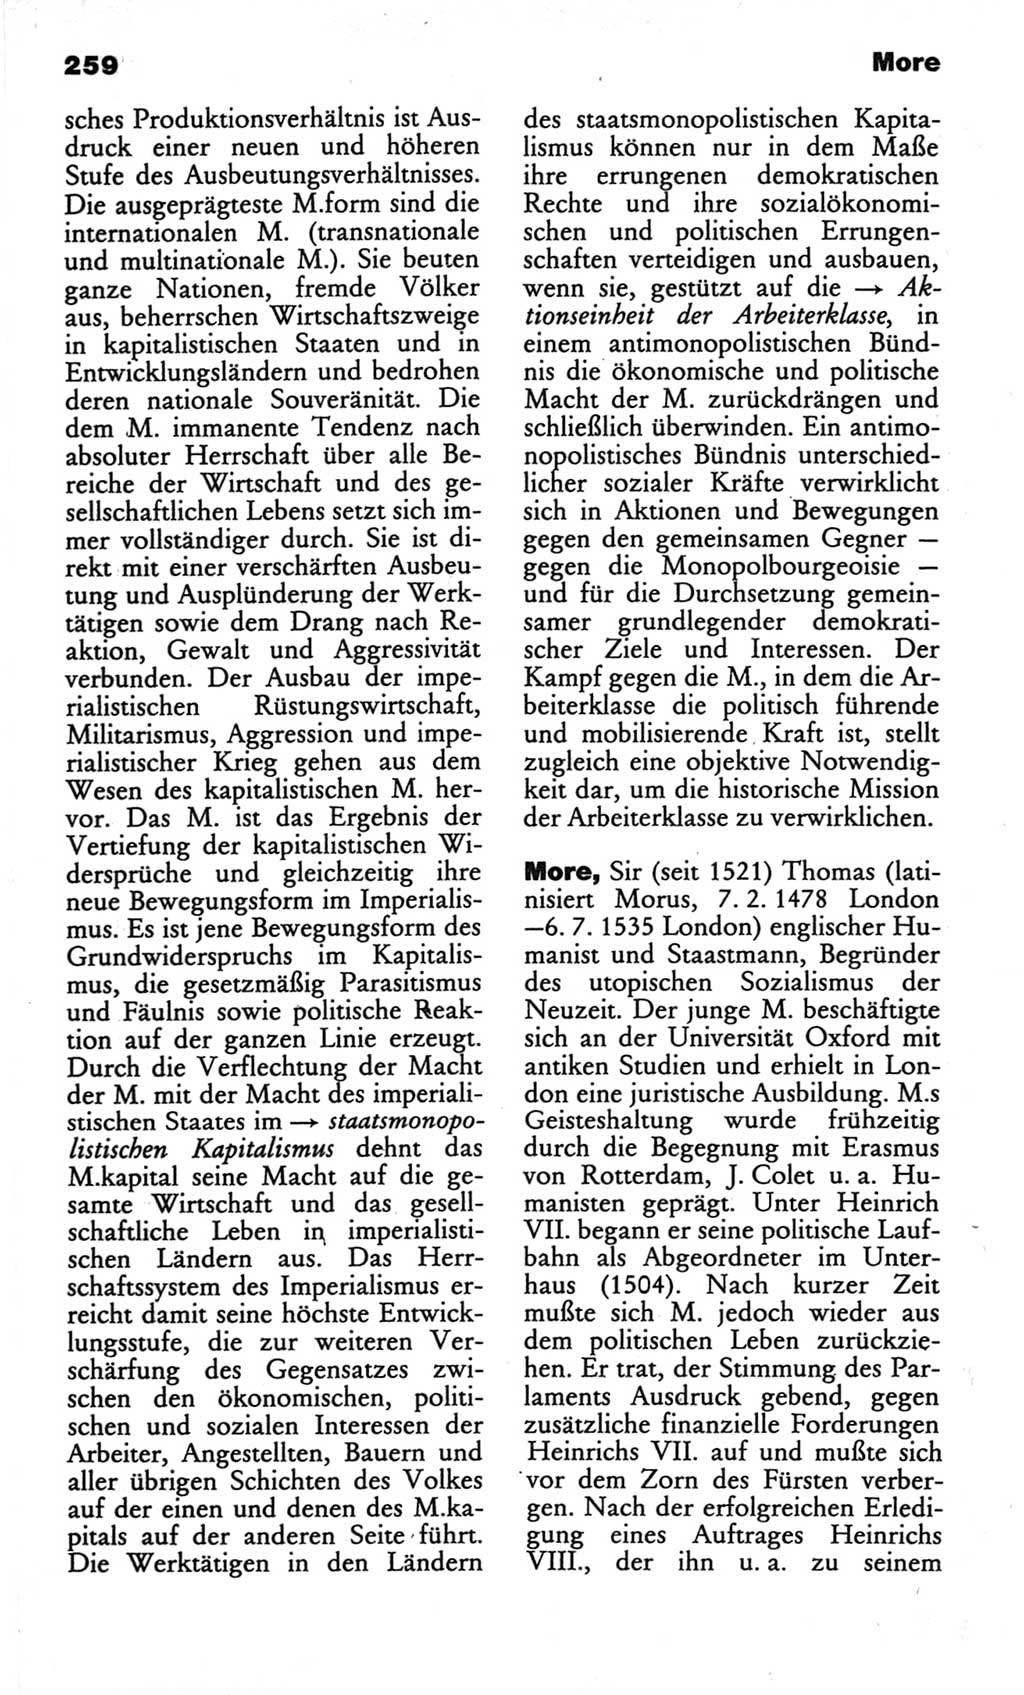 Wörterbuch des wissenschaftlichen Kommunismus [Deutsche Demokratische Republik (DDR)] 1982, Seite 259 (Wb. wiss. Komm. DDR 1982, S. 259)